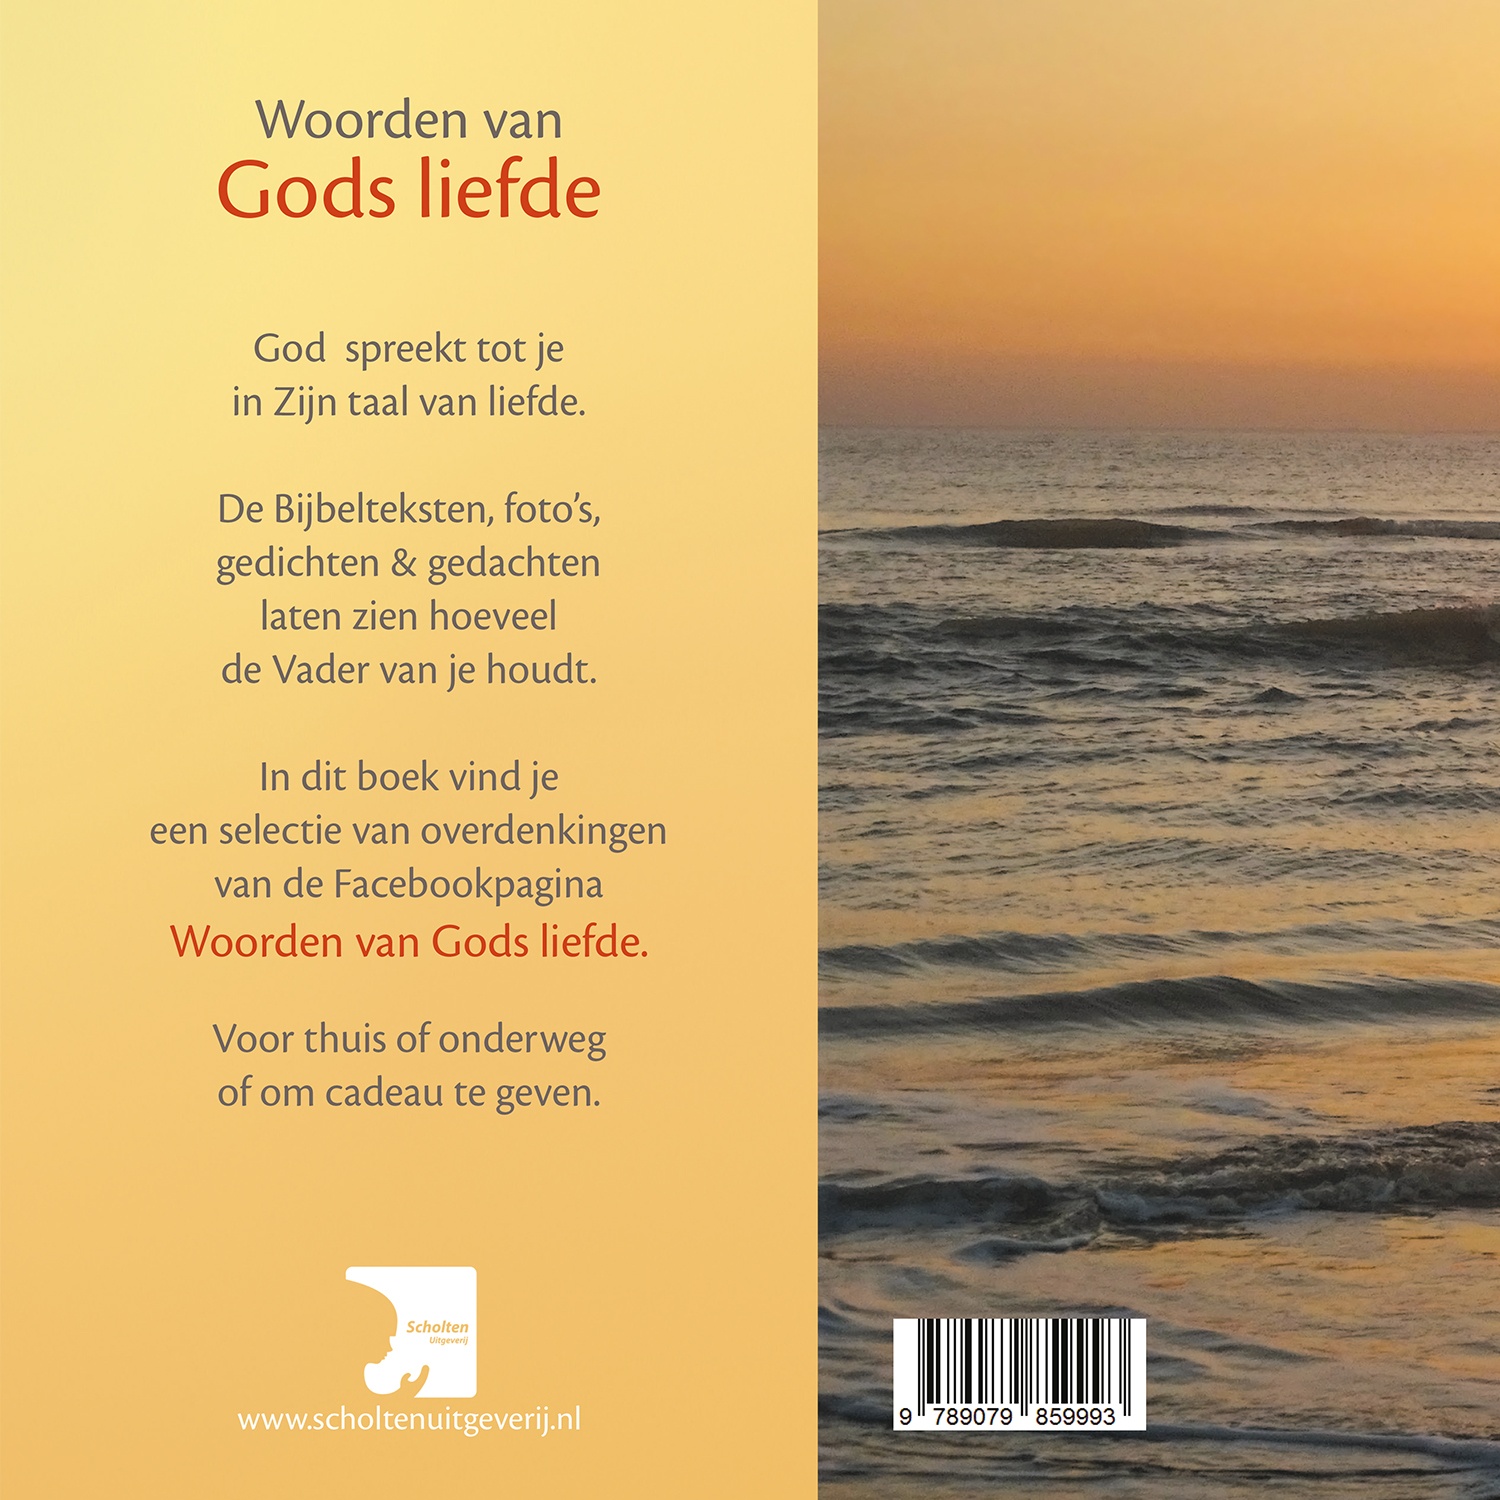 Ongekend Woorden van Gods Liefde, Ans Heij, €13,50 (gratis verz.) AW-92